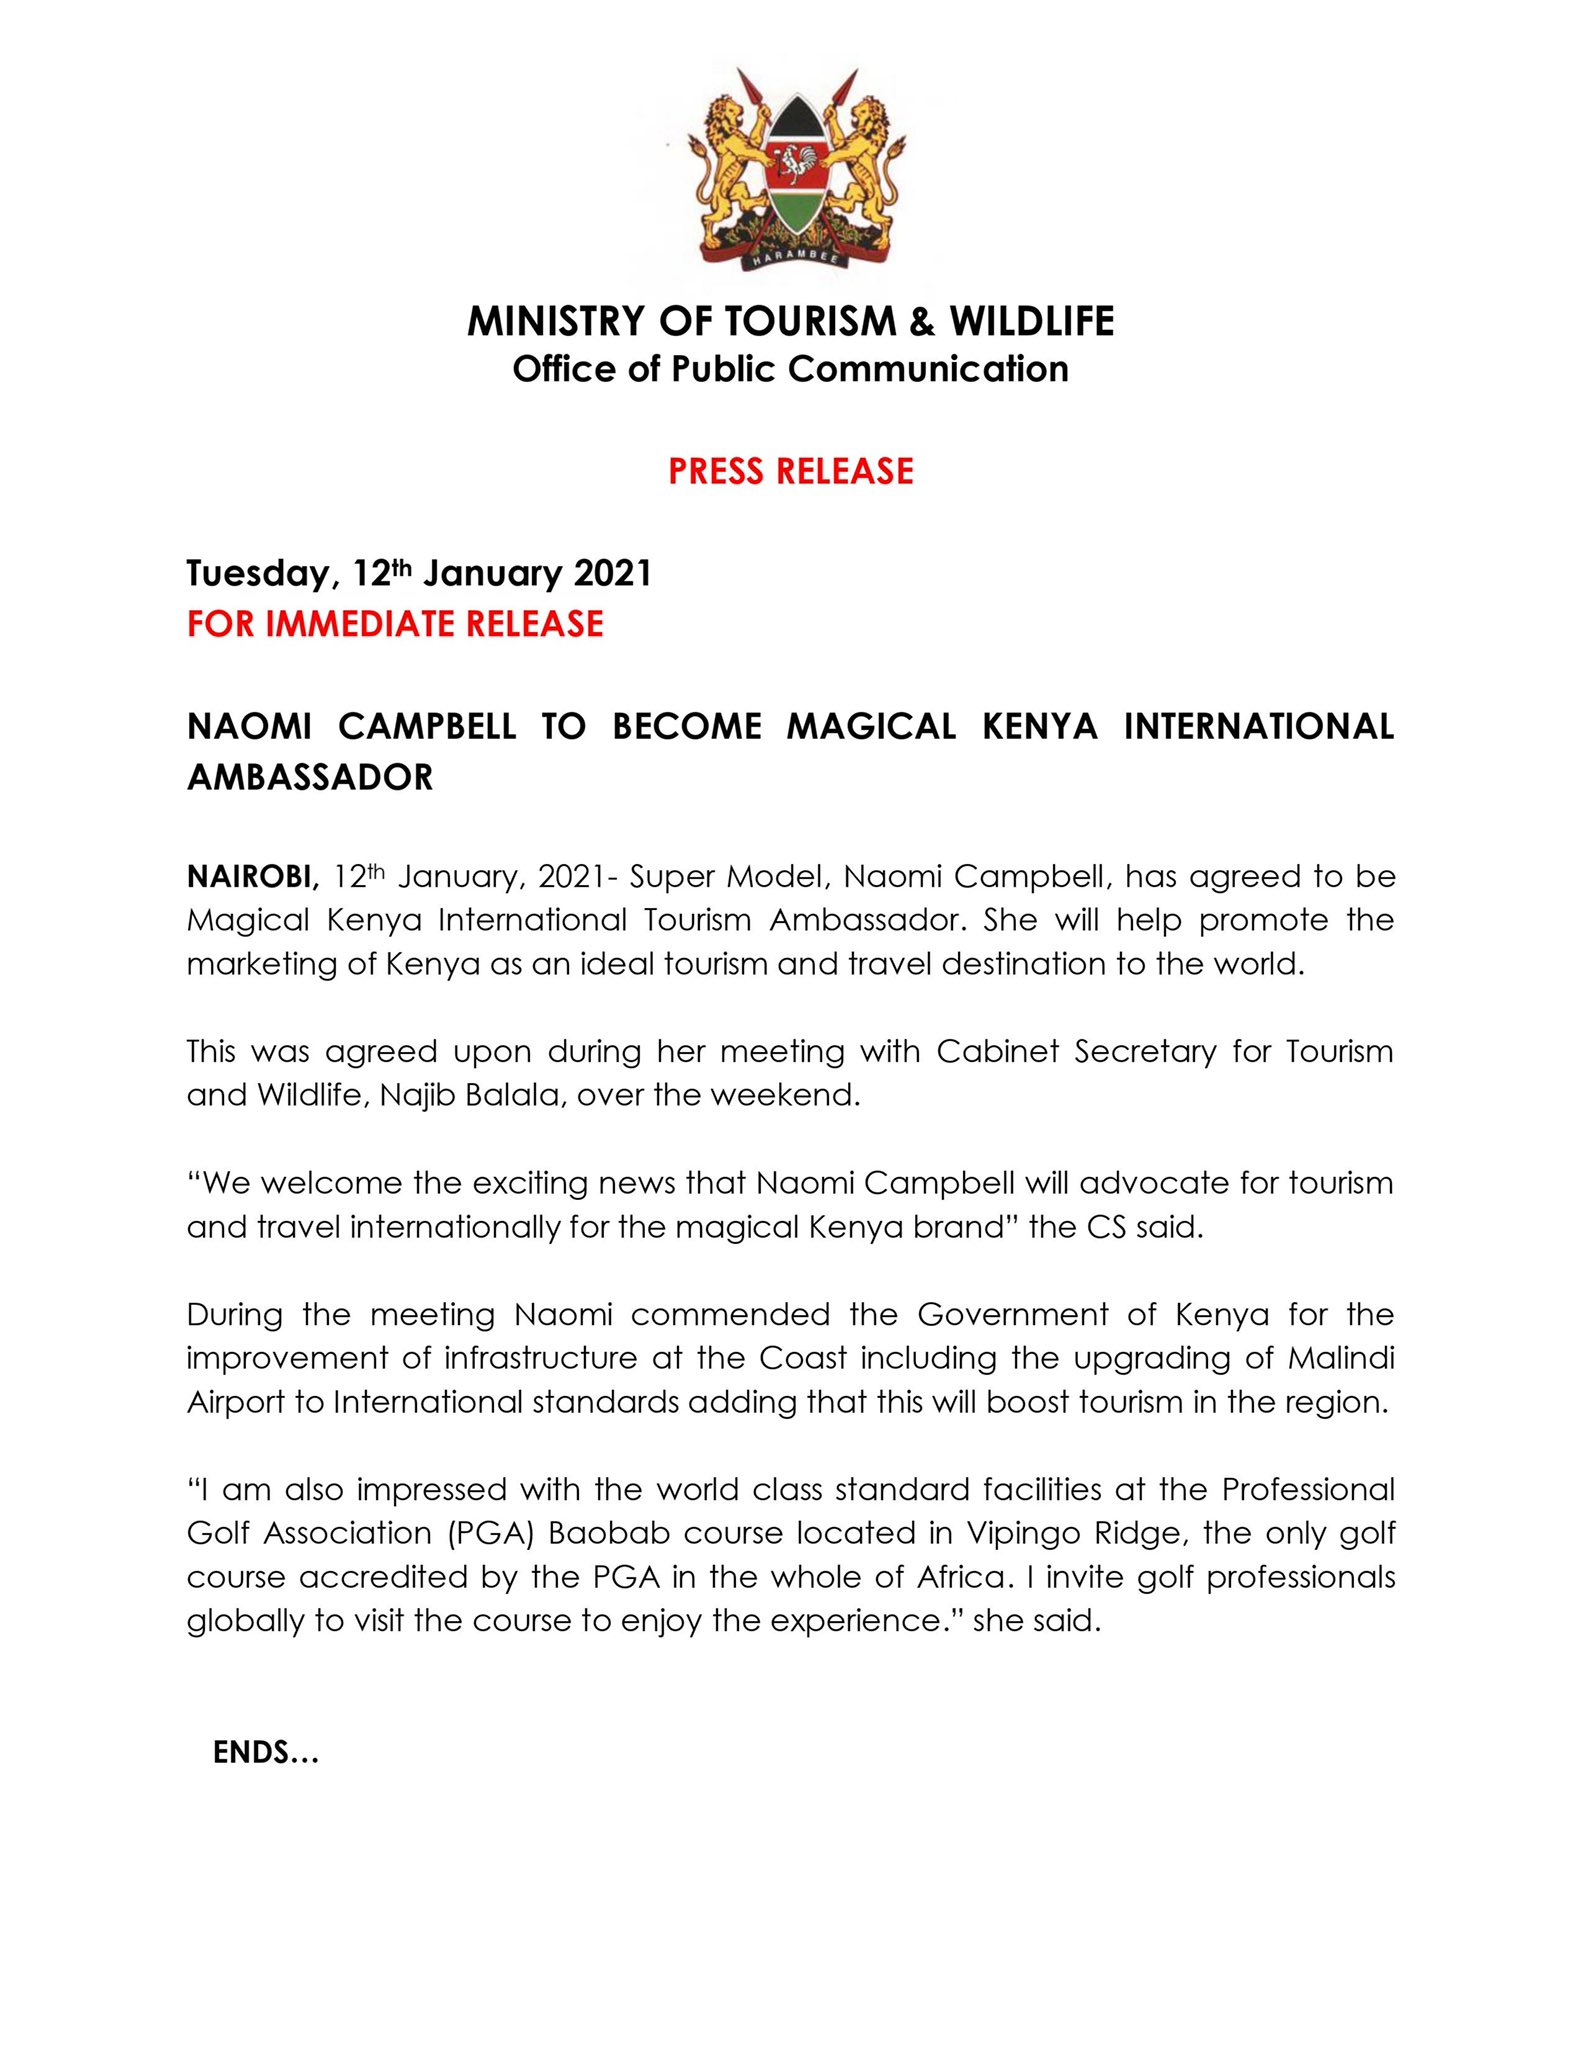 Naomi Campbell becomes Magical Kenya tourism ambassador